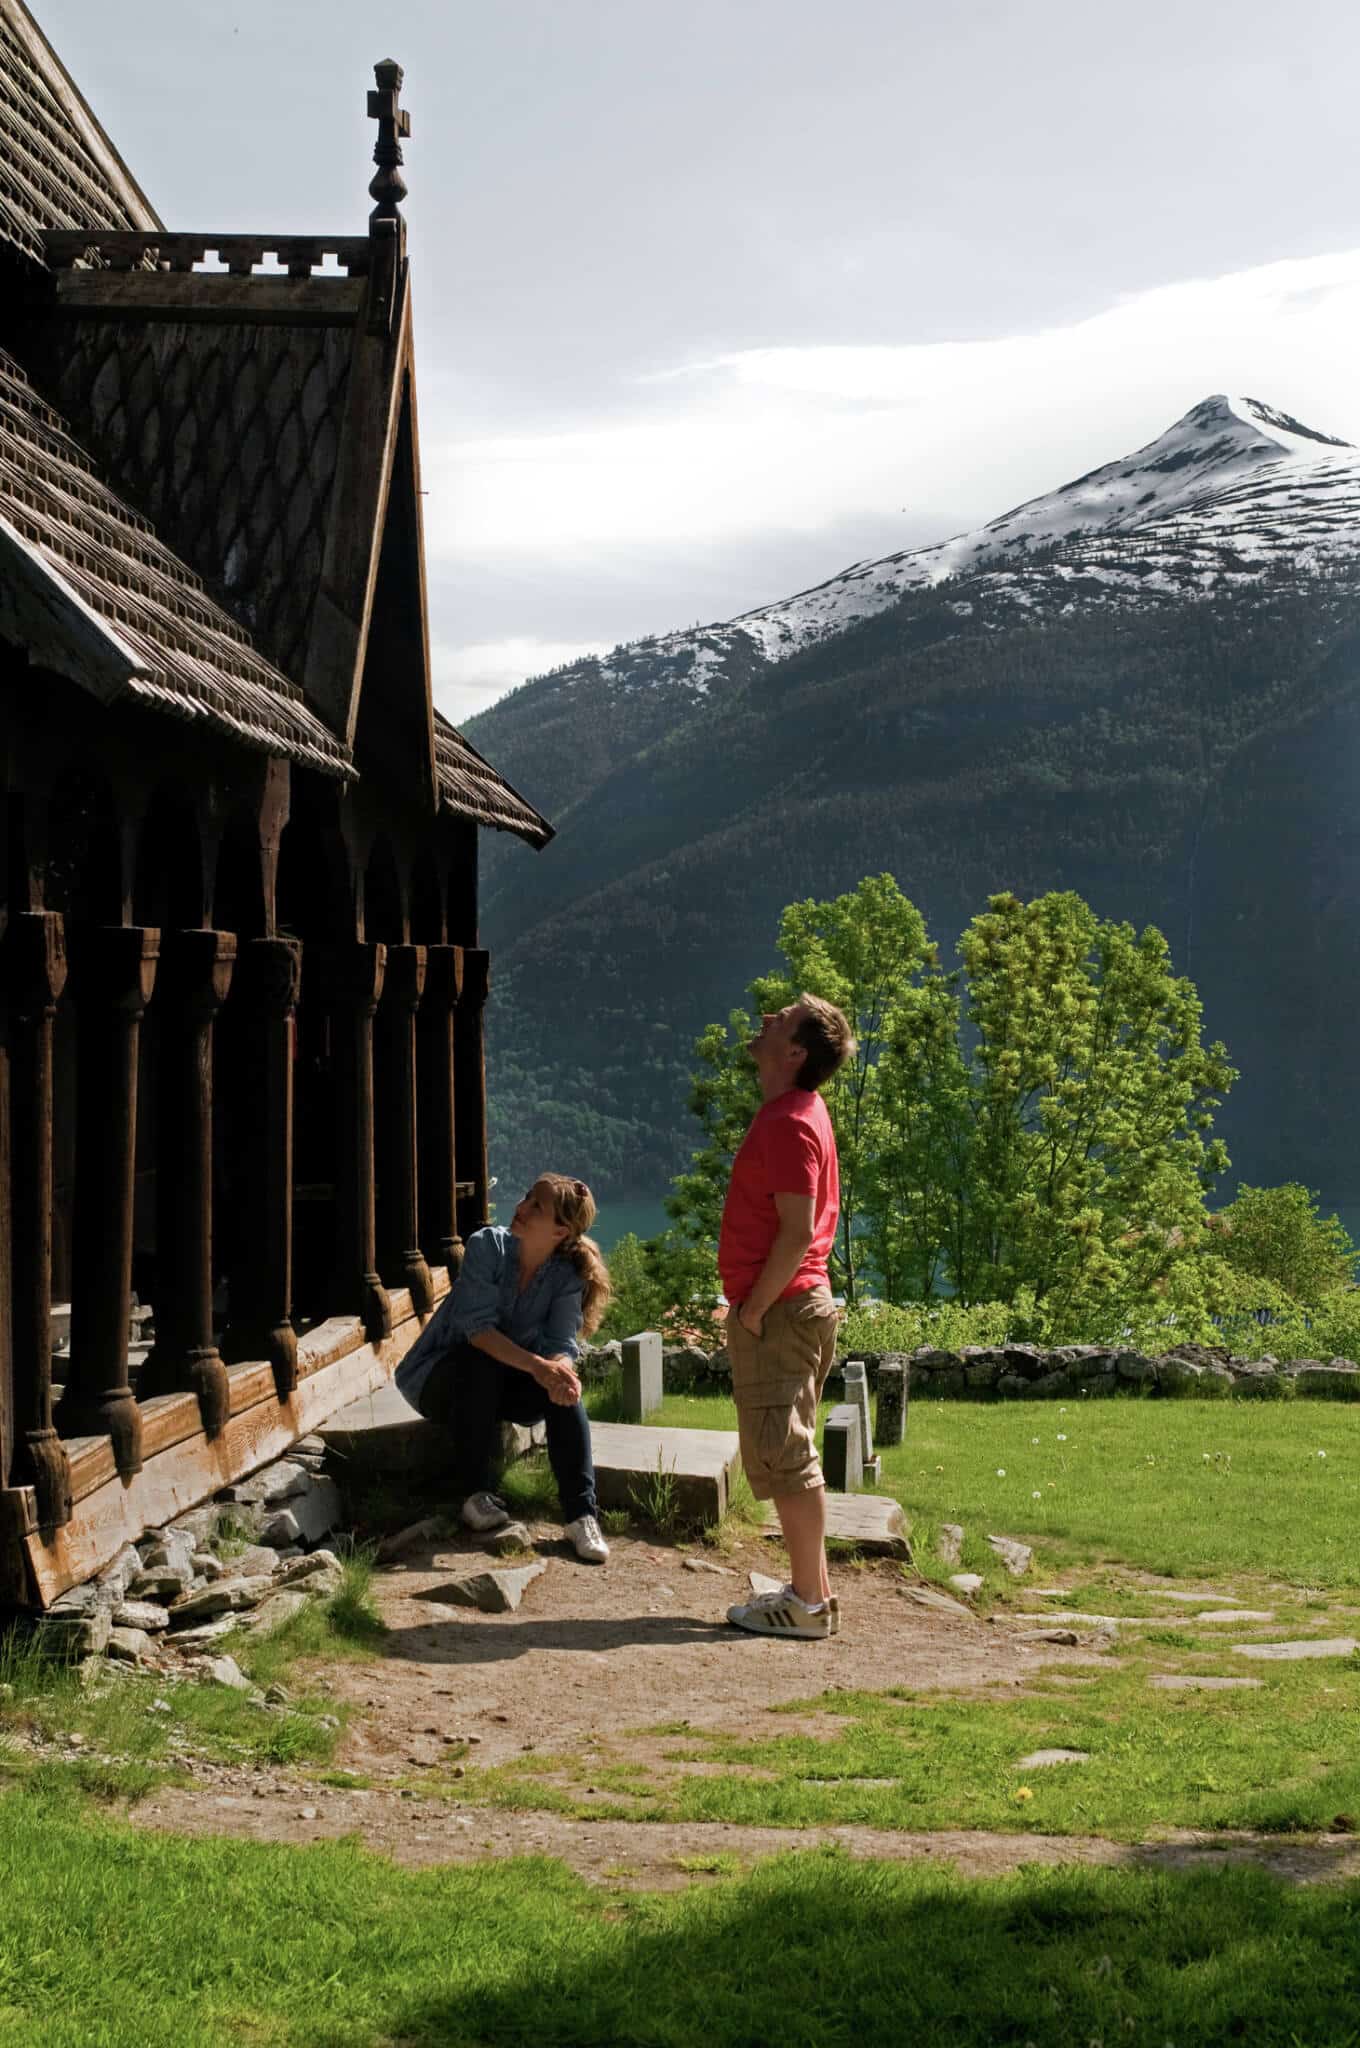 Urno lazdos bažnyčia-viena iš daugelio stulbinančių bažnyčių Norvegijoje